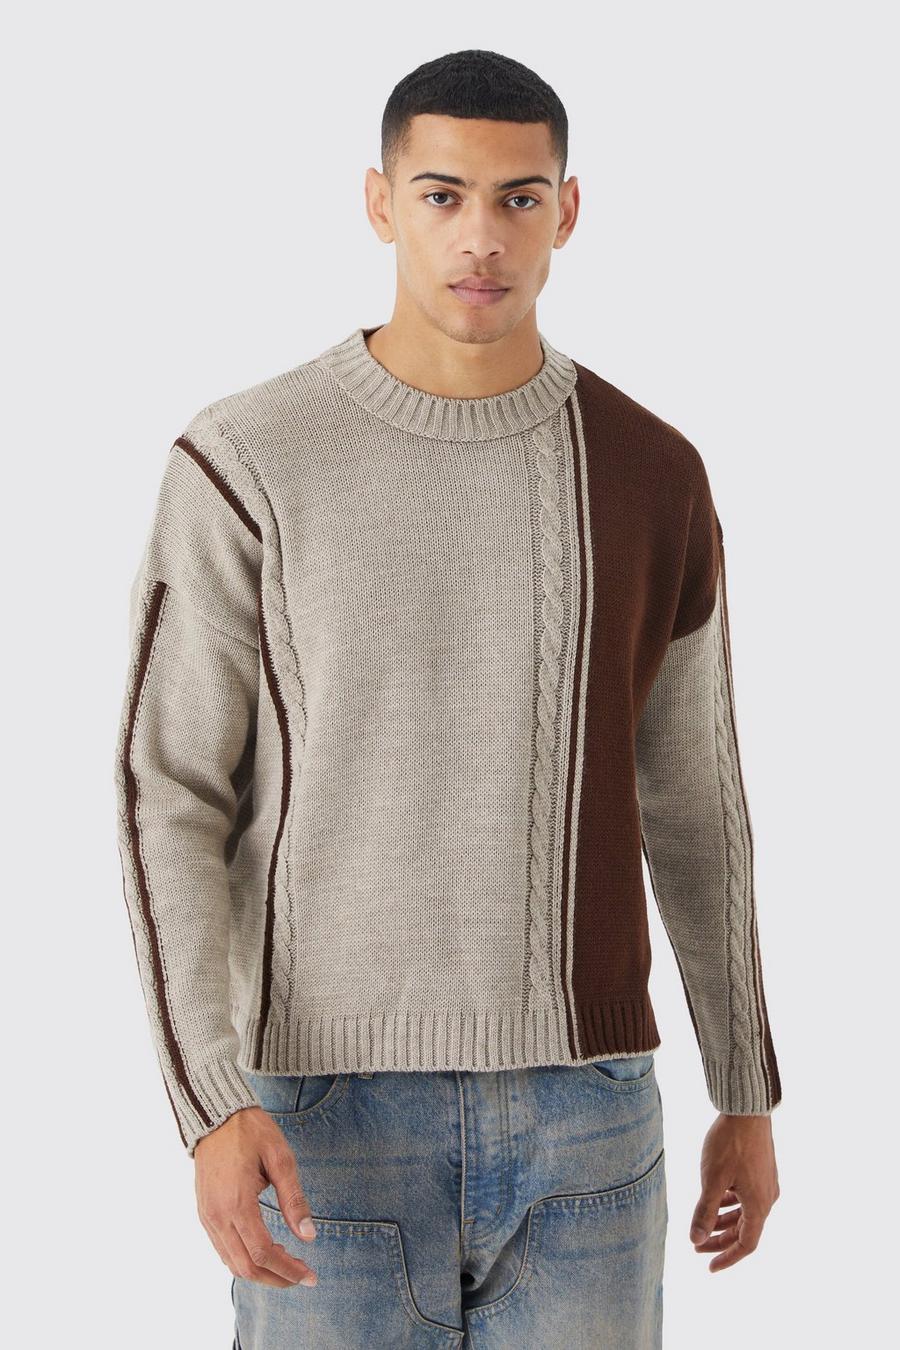 Maglione squadrato oversize a blocchi di colore in maglia intrecciata, Brown marrone